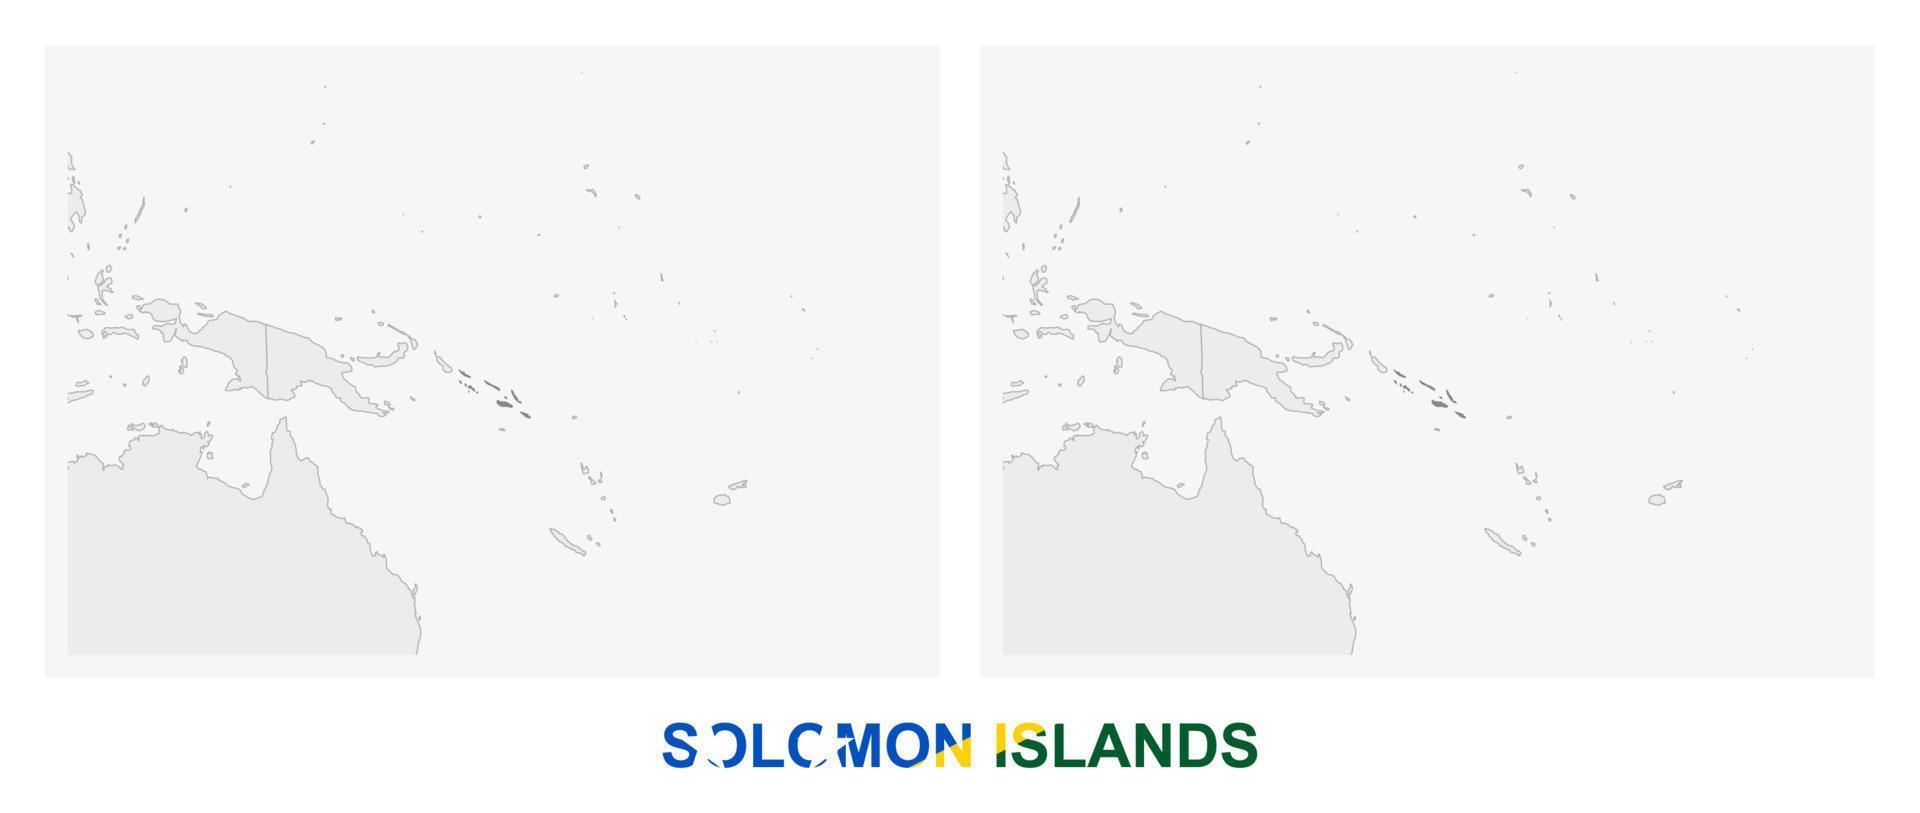 zwei Versionen der Karte der Salomonen, mit der Flagge der Salomonen und dunkelgrau hervorgehoben. vektor